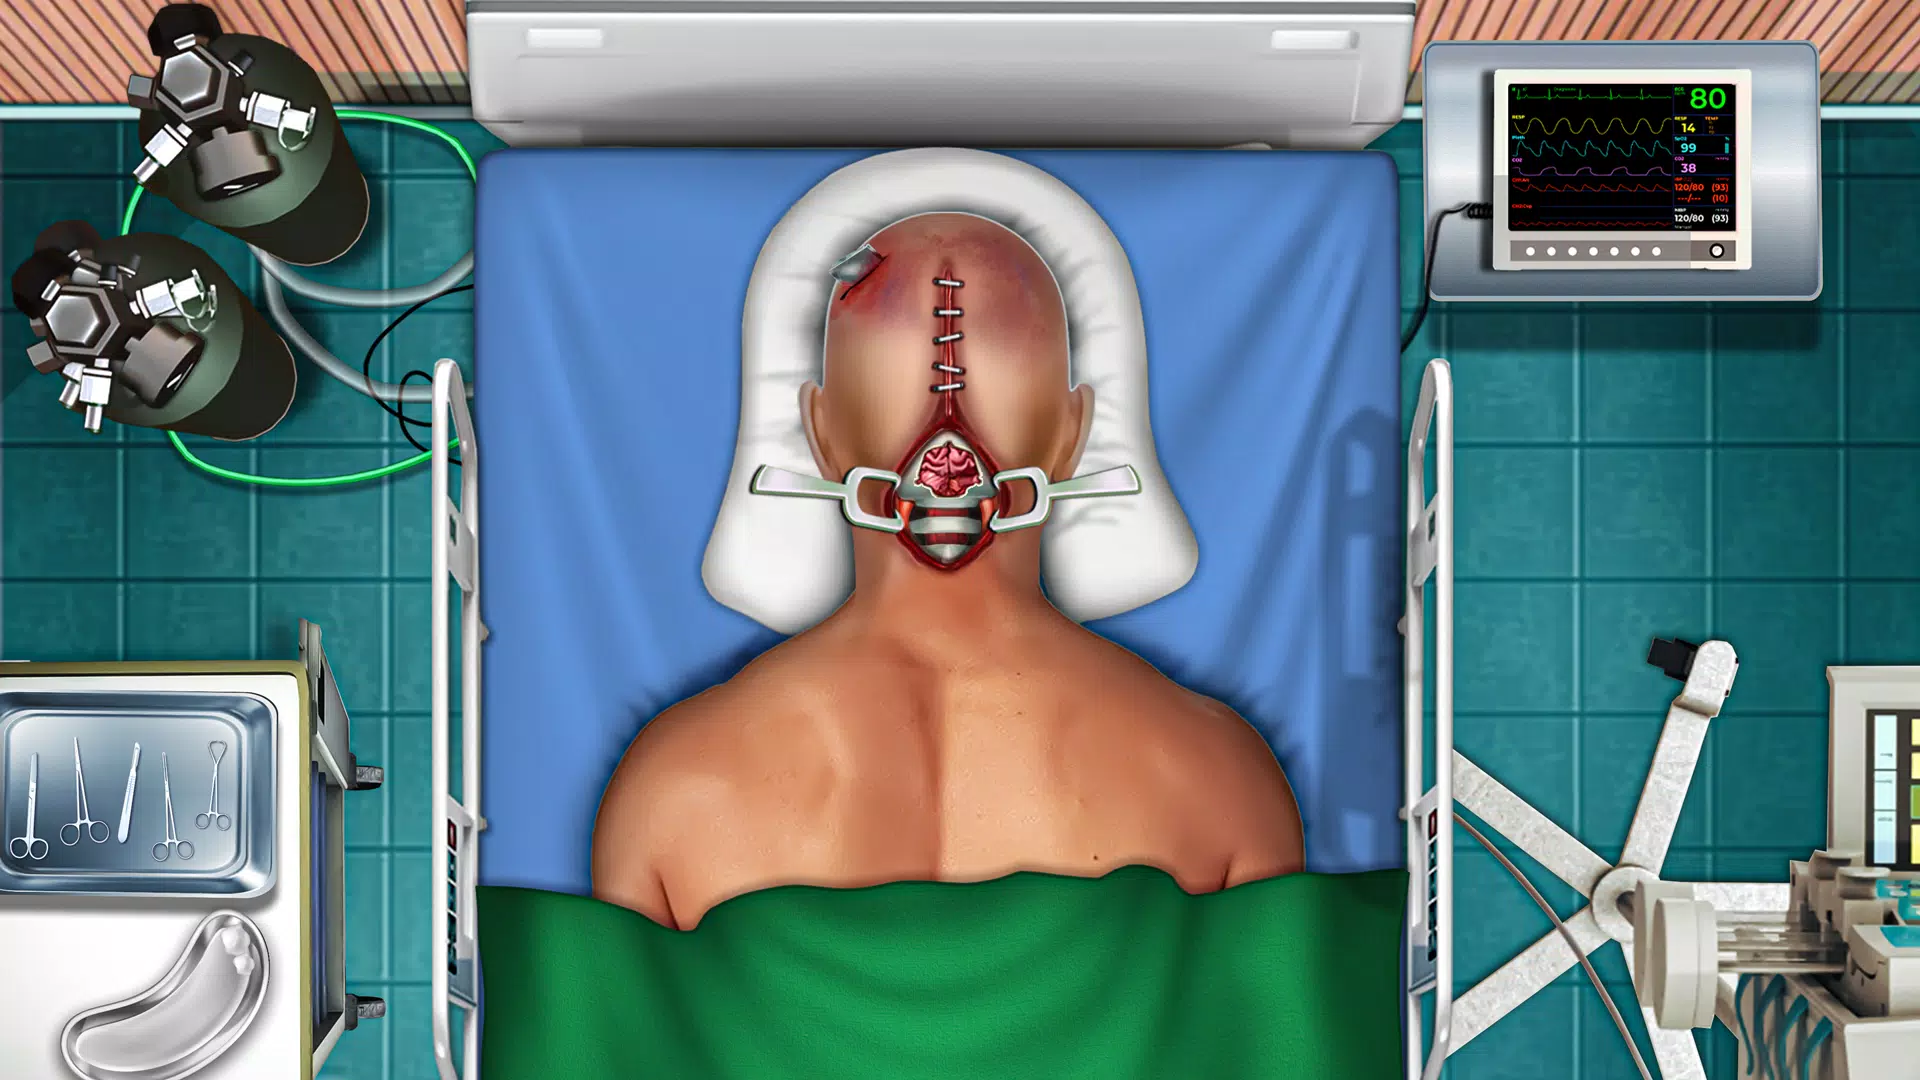 Download do APK de Cirurgia plástica simulador cirurgião doutor